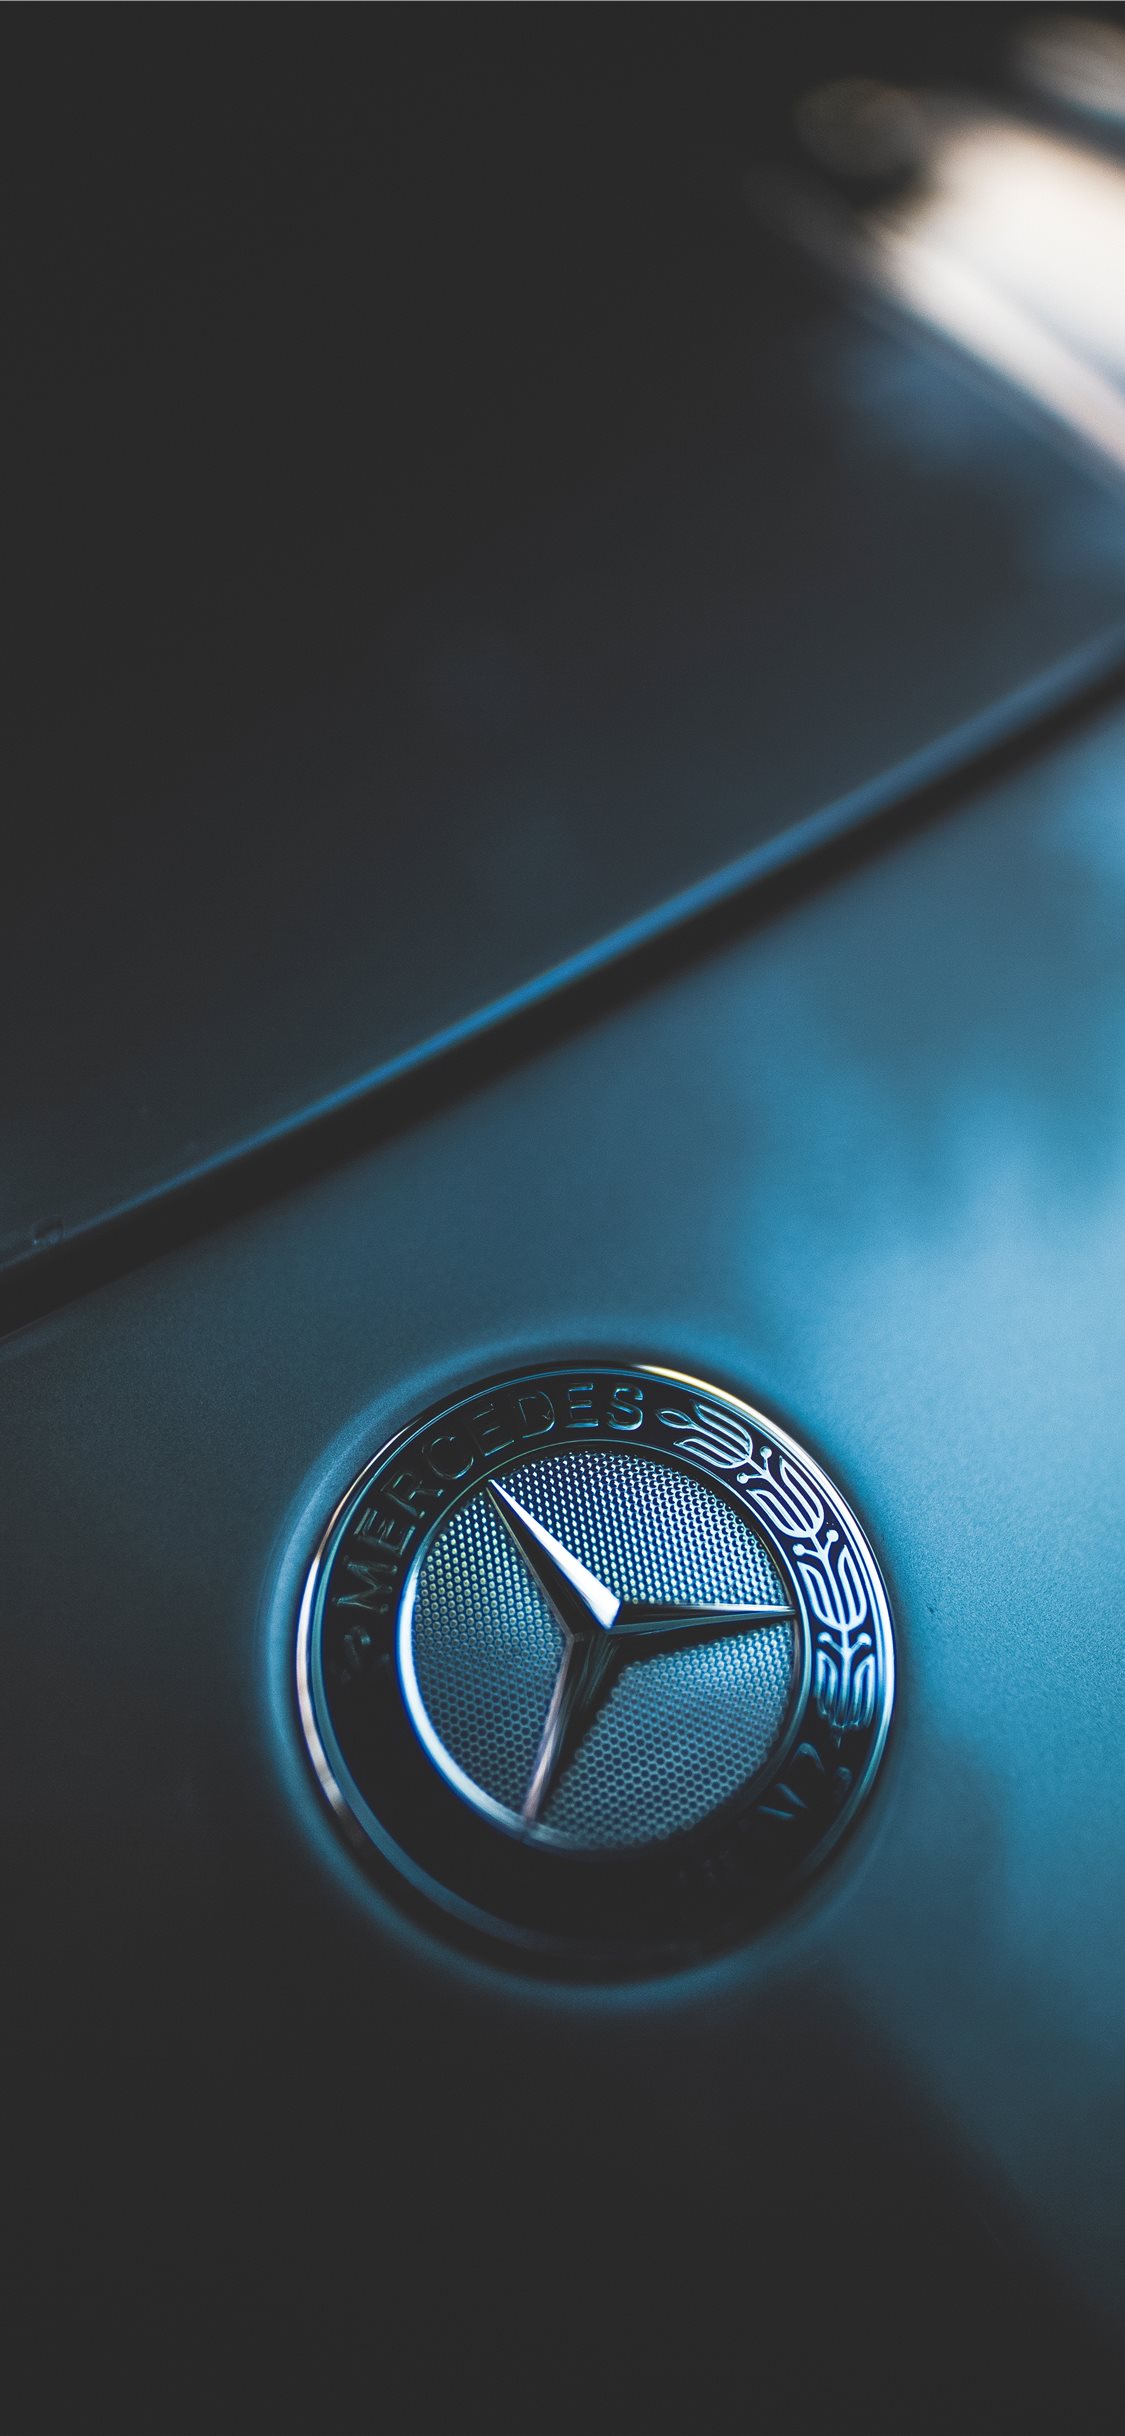 Closeup Photo Of Mercedes Benz Emblem Iphone X Wallpapers Free Download